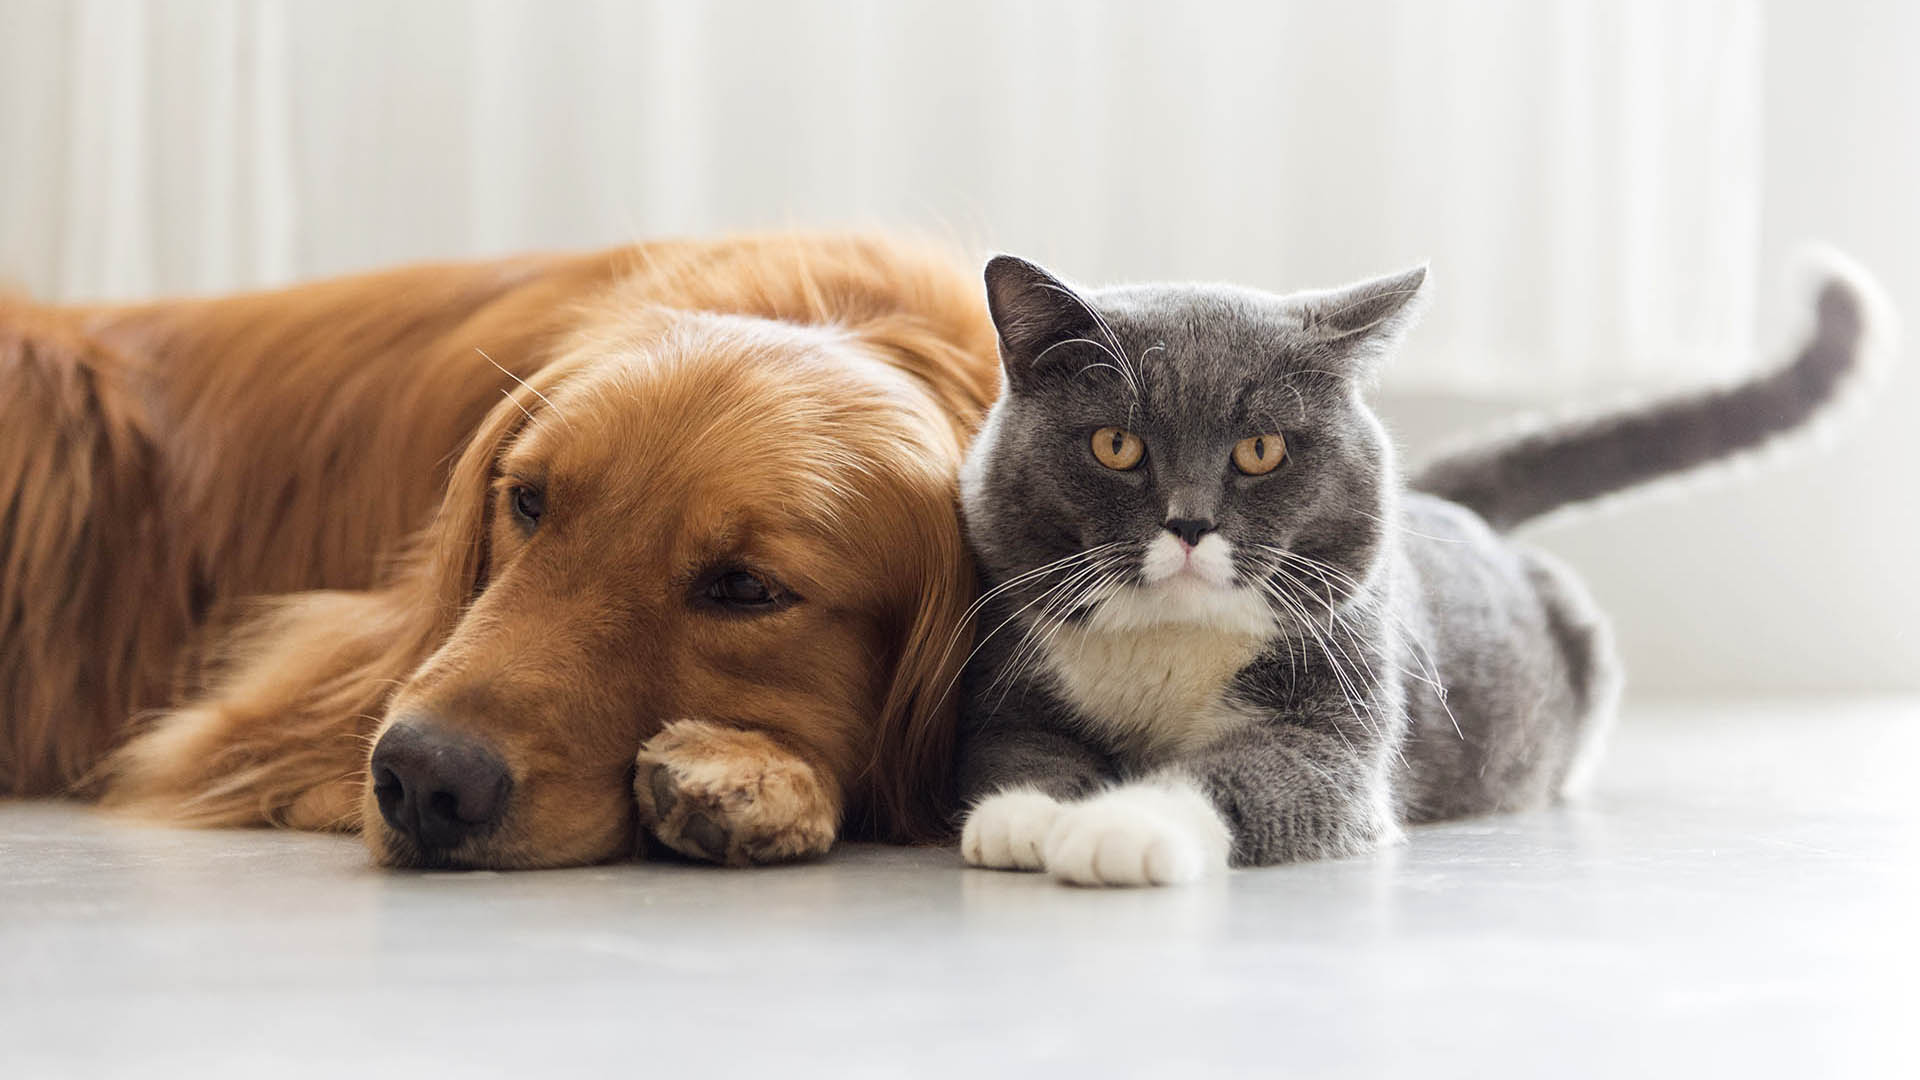 Los perros y gatos son los animales de afecto y compañía más habituales por eso es importante garantizar o intentar por lo menos su sana convivencia (Getty Images)